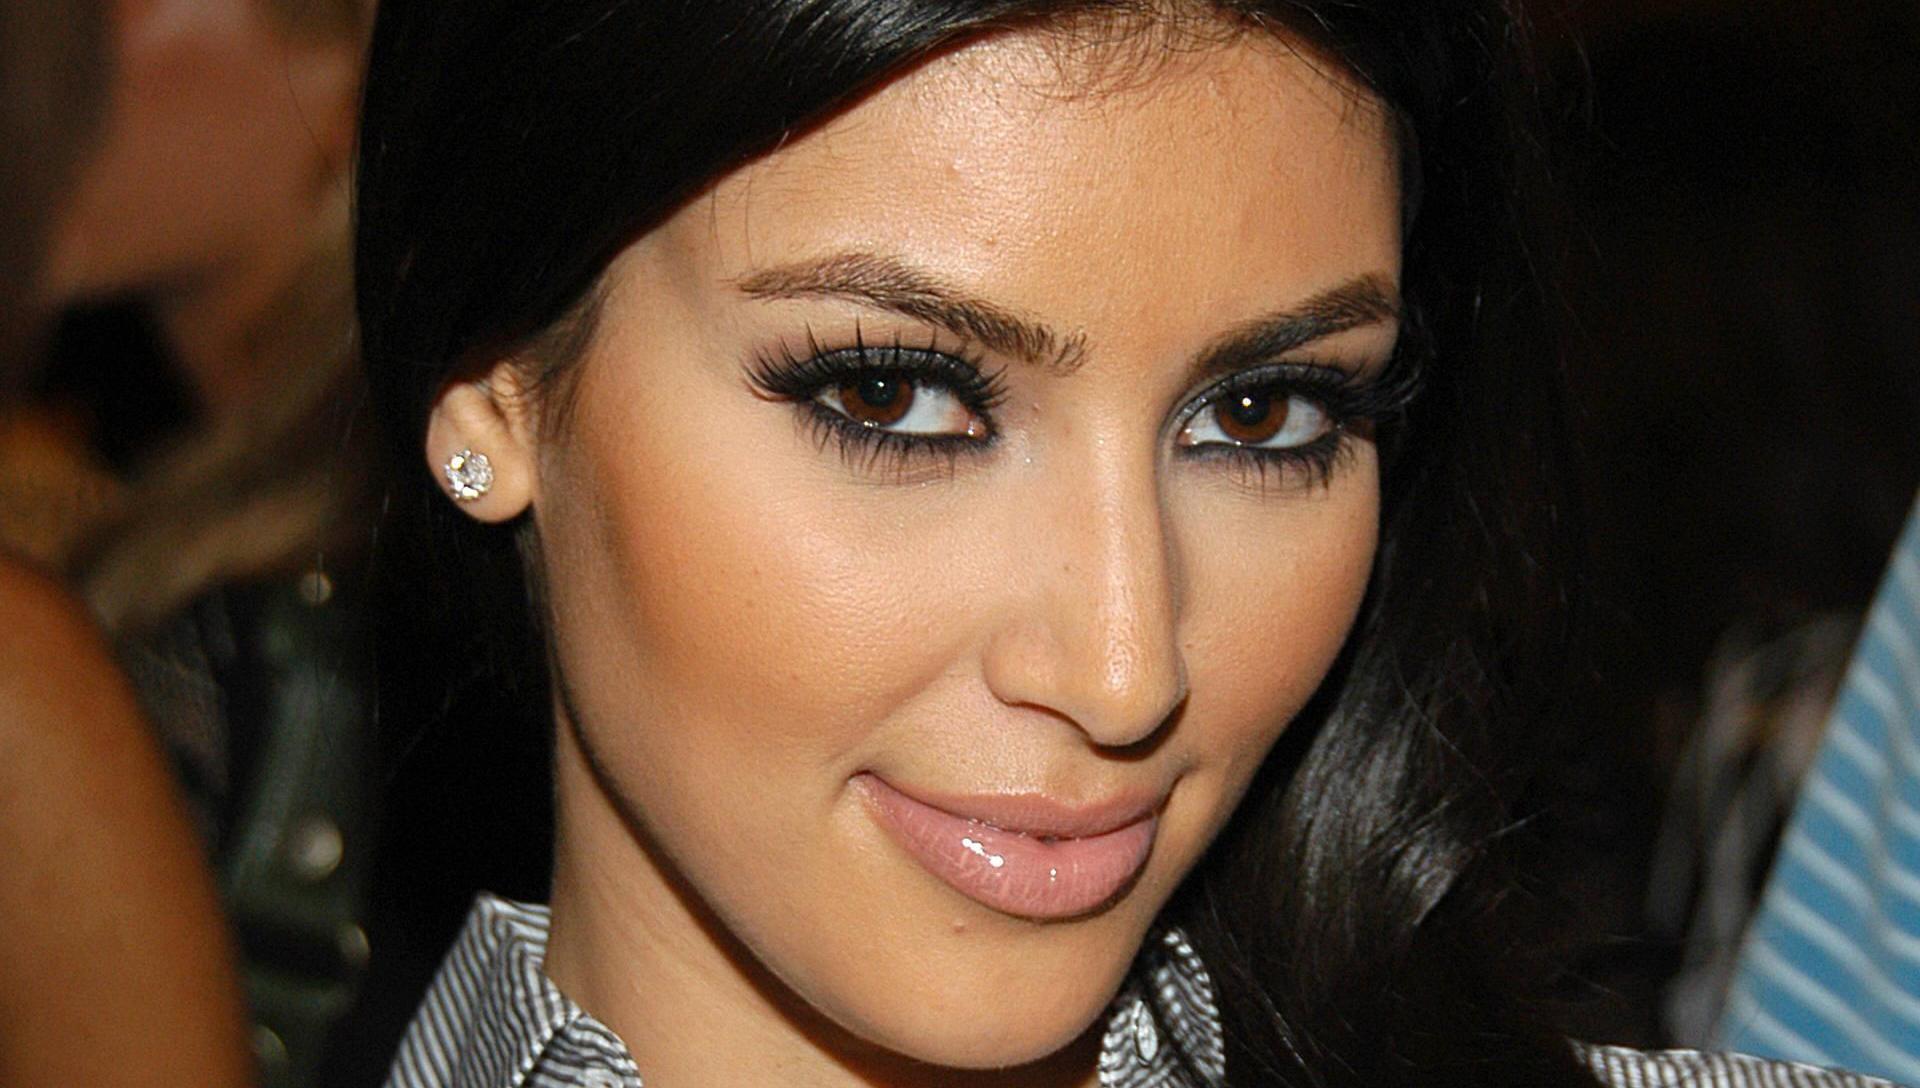 Kim Kardashian Makeup Face Wallpaper 1920x1088 px Free Download